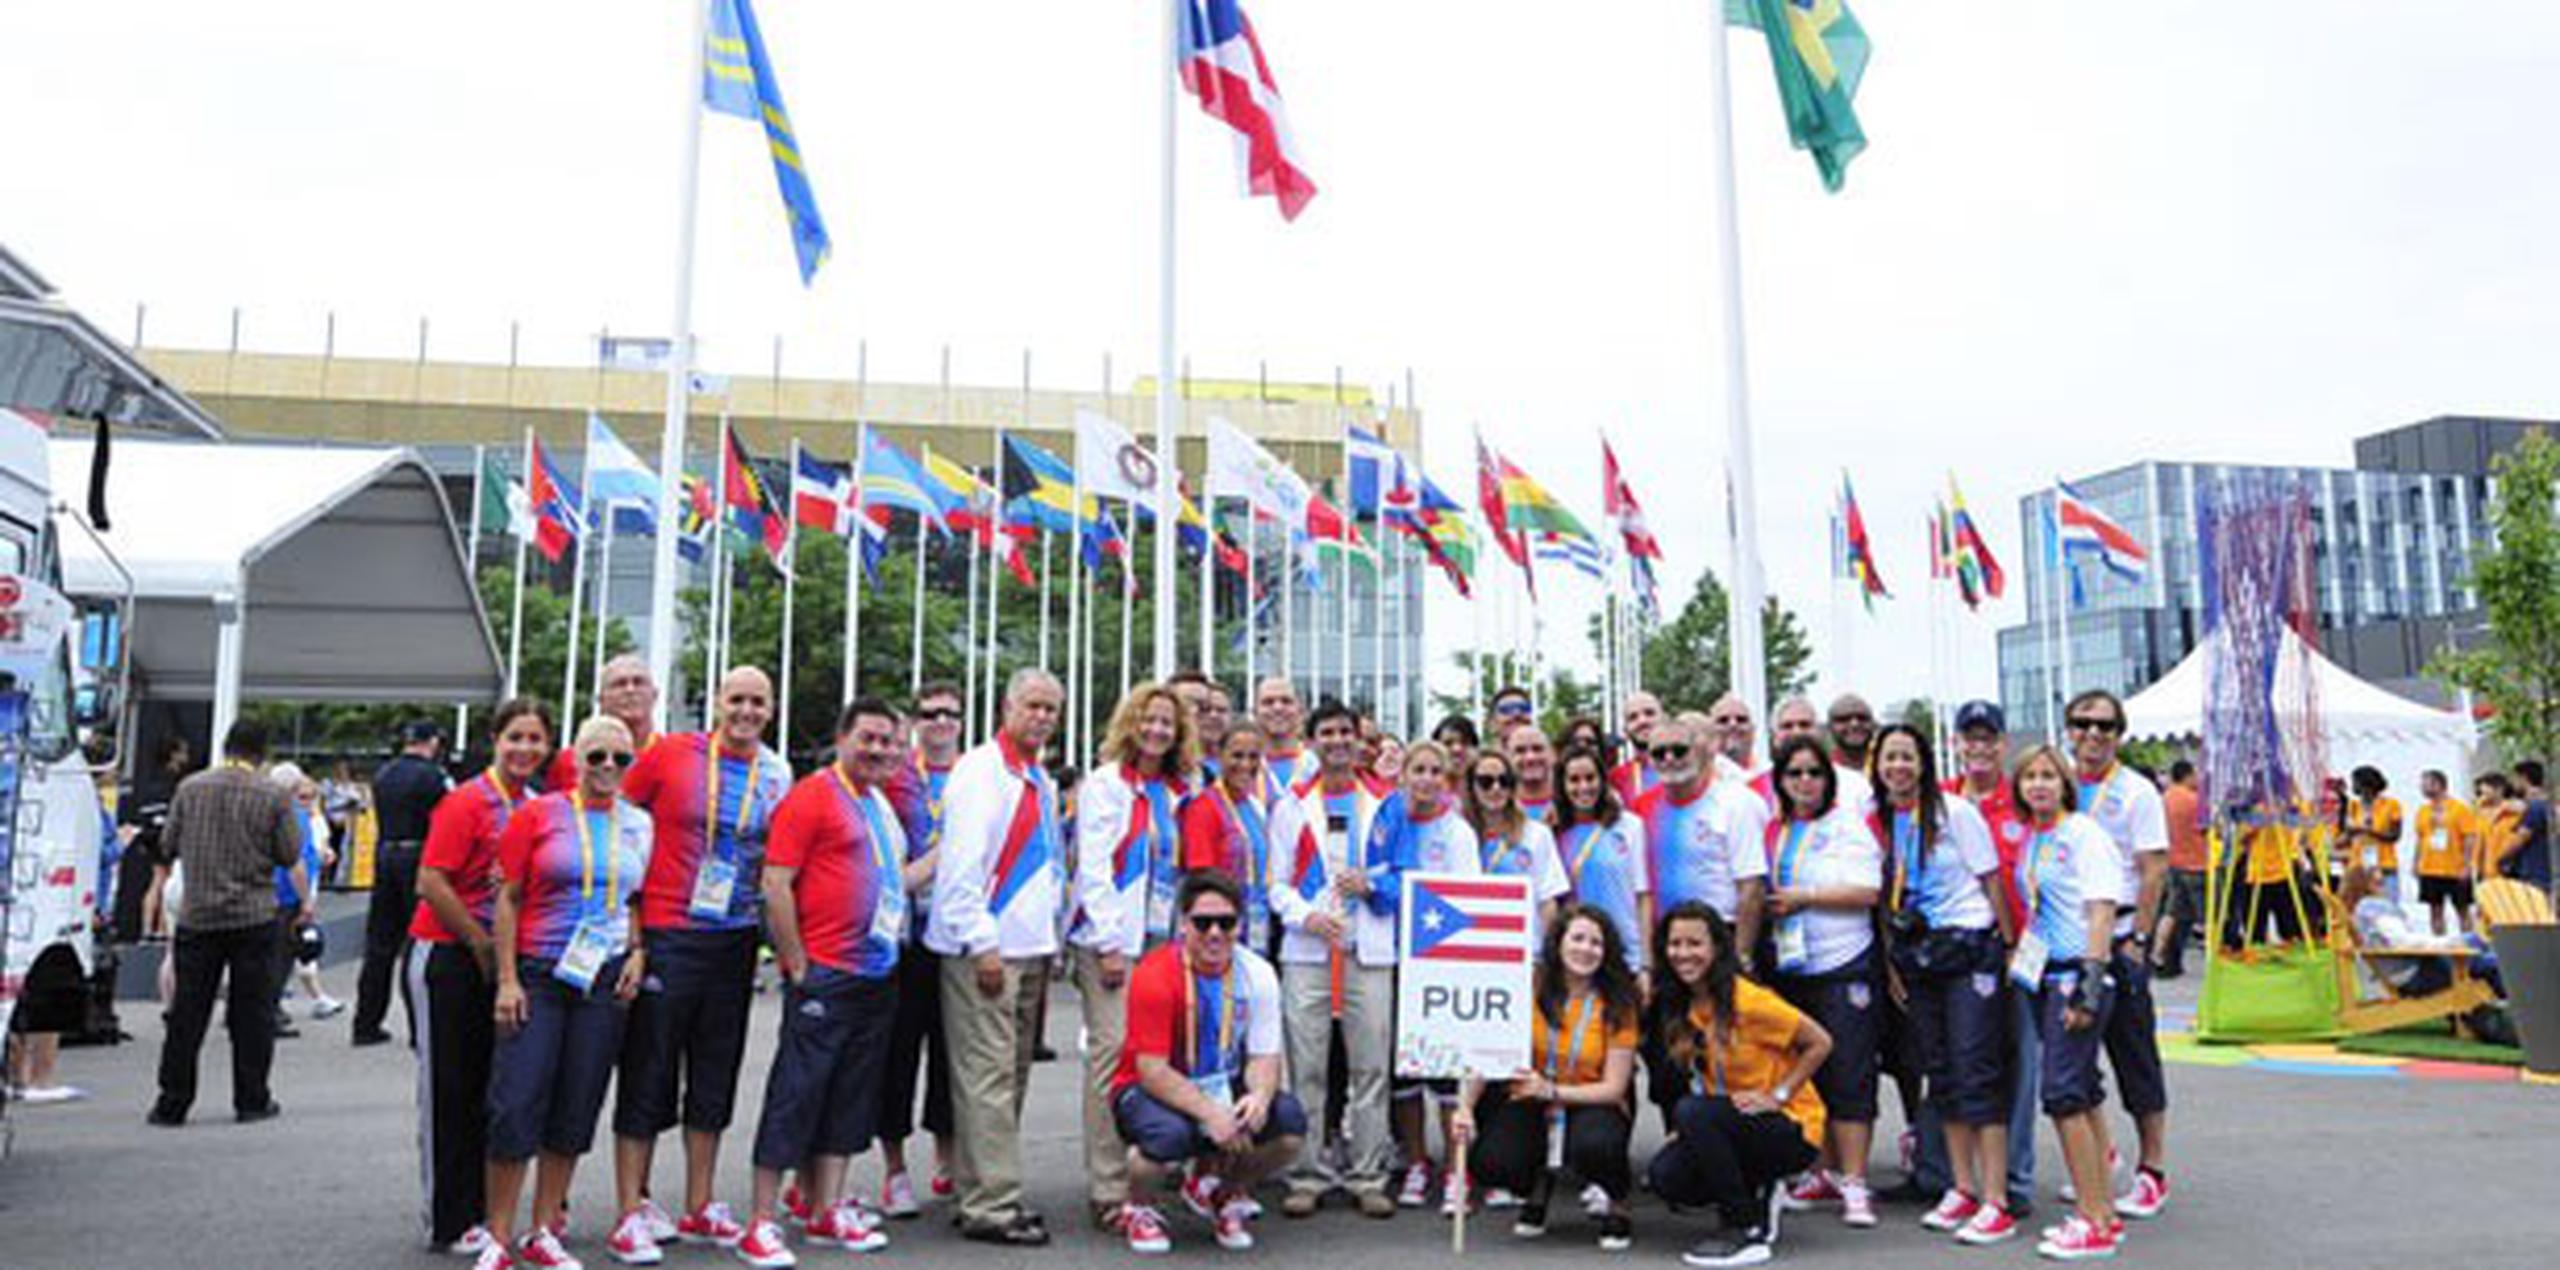 La Delegación de Puerto Rico está compuesta por 252 atletas a competir en 29 disciplinas deportivas. (Suministrada)